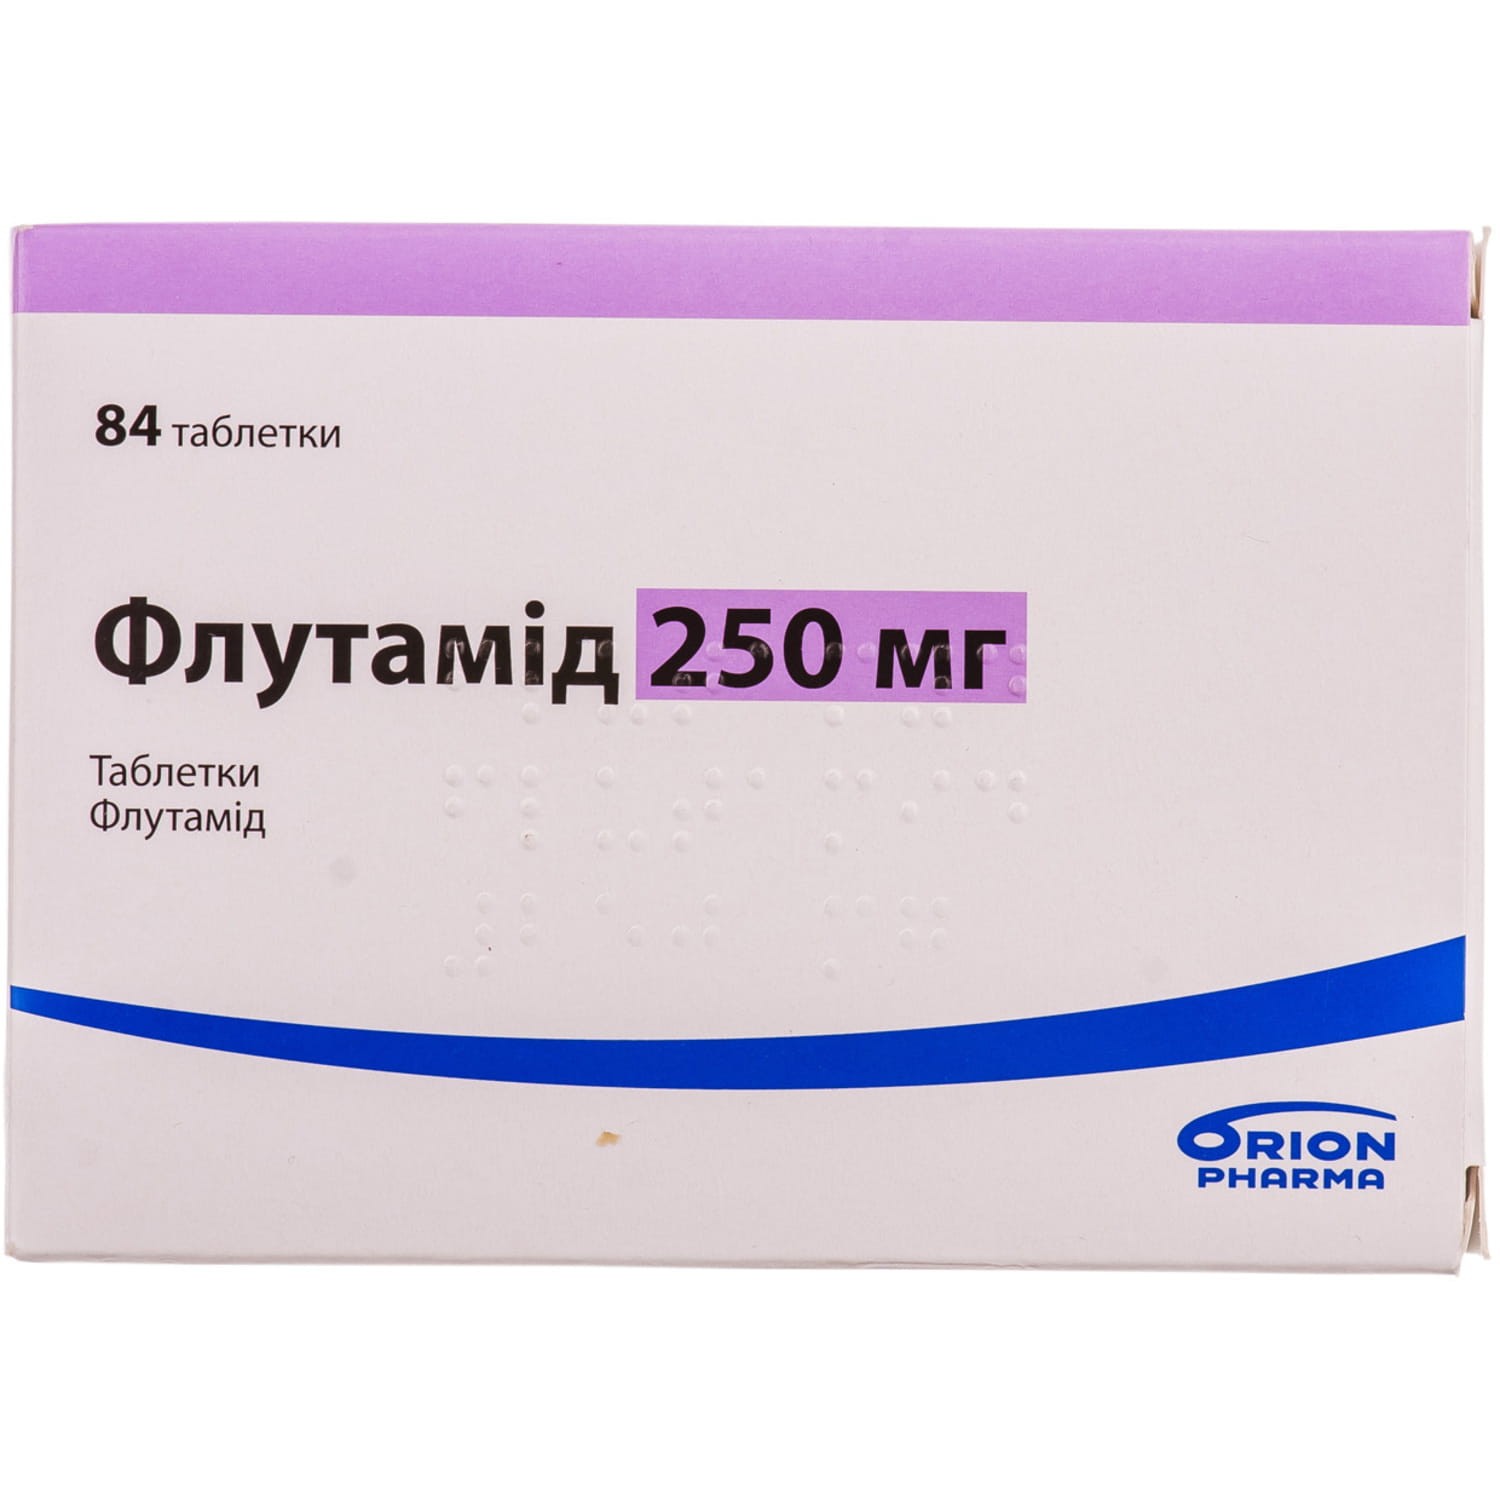 Аналоги препарата Флутамид таблетки по 250 мг, 84 шт. - Orion Pharma .